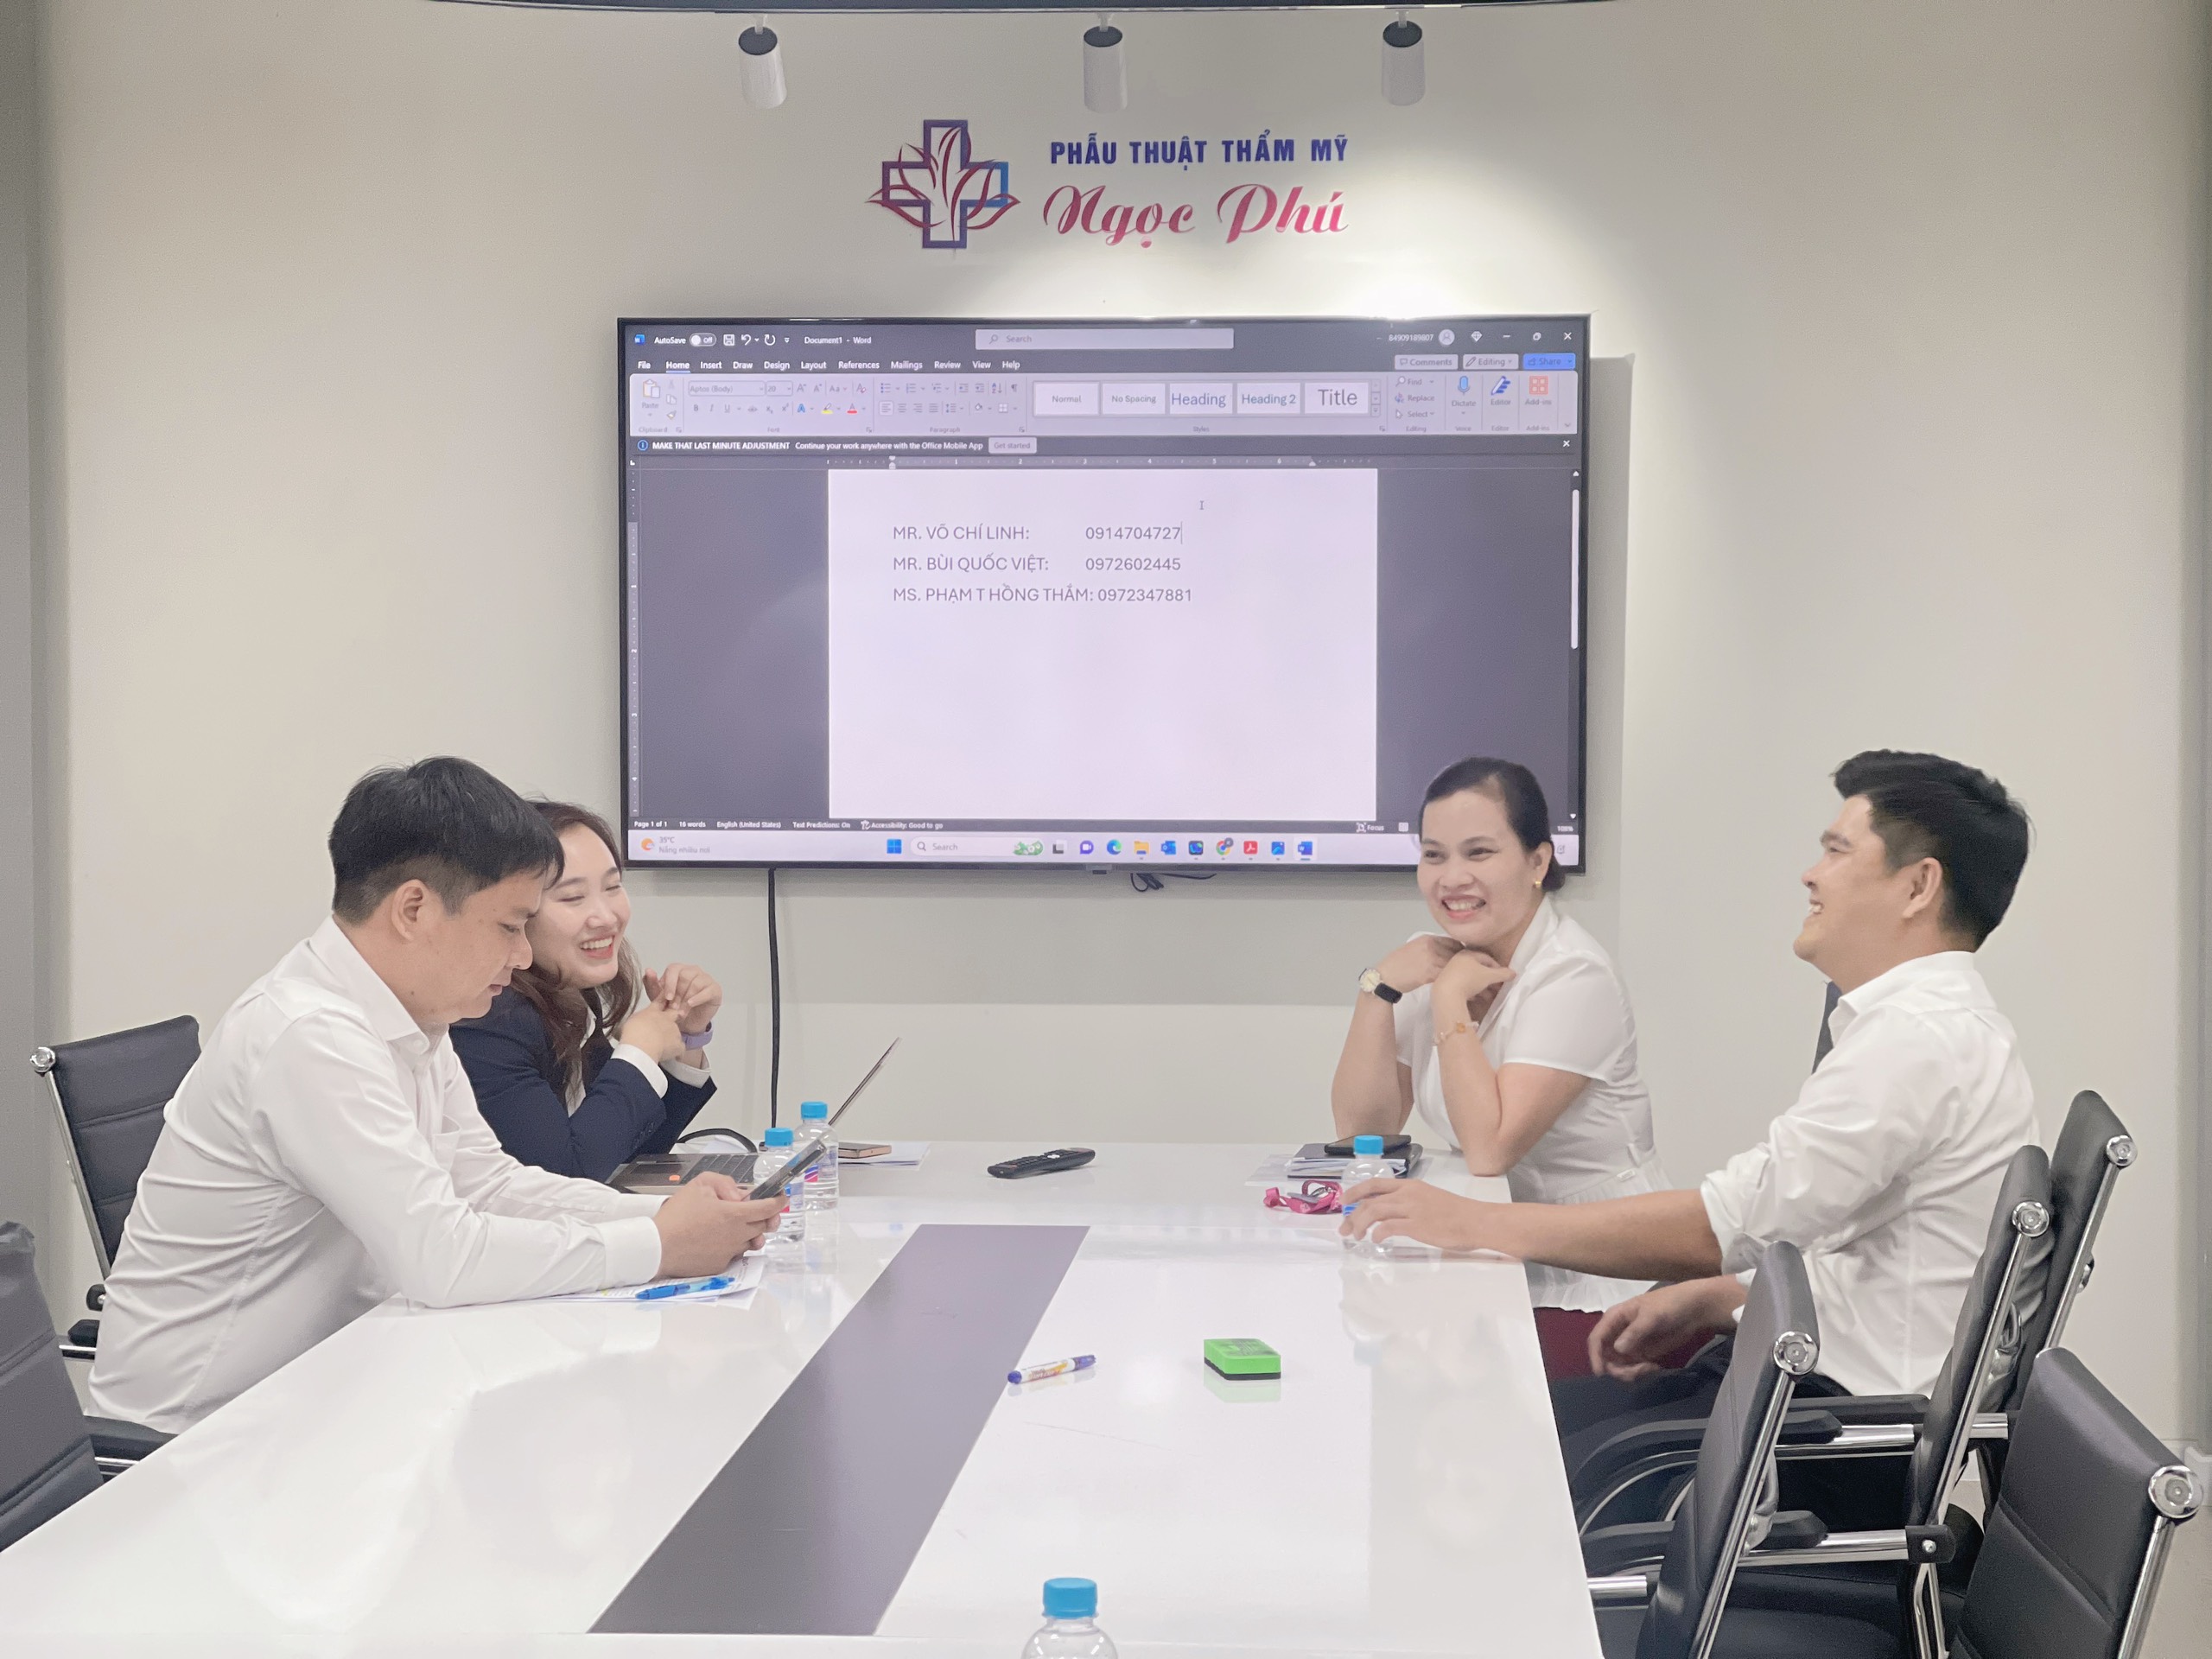 Thẩm mỹ Ngọc Phú kết hợp với ngân hàng BIDV